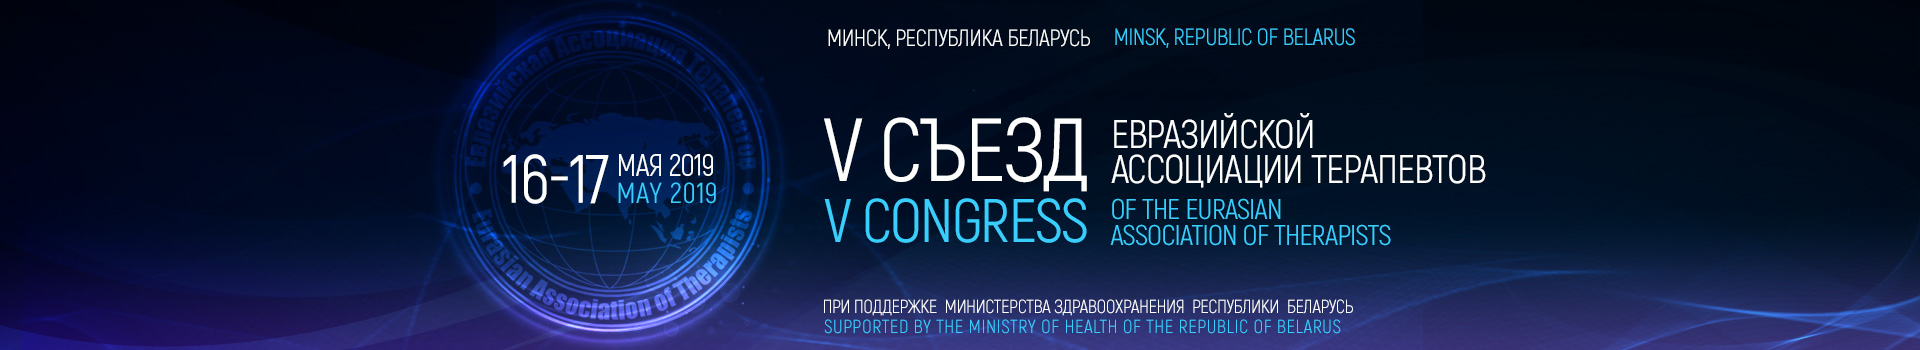 Приглашаем Вас принять участие в одном из крупнейших медицинских событий Евразии:  V Съезд Евразийской Ассоциации Терапевтов